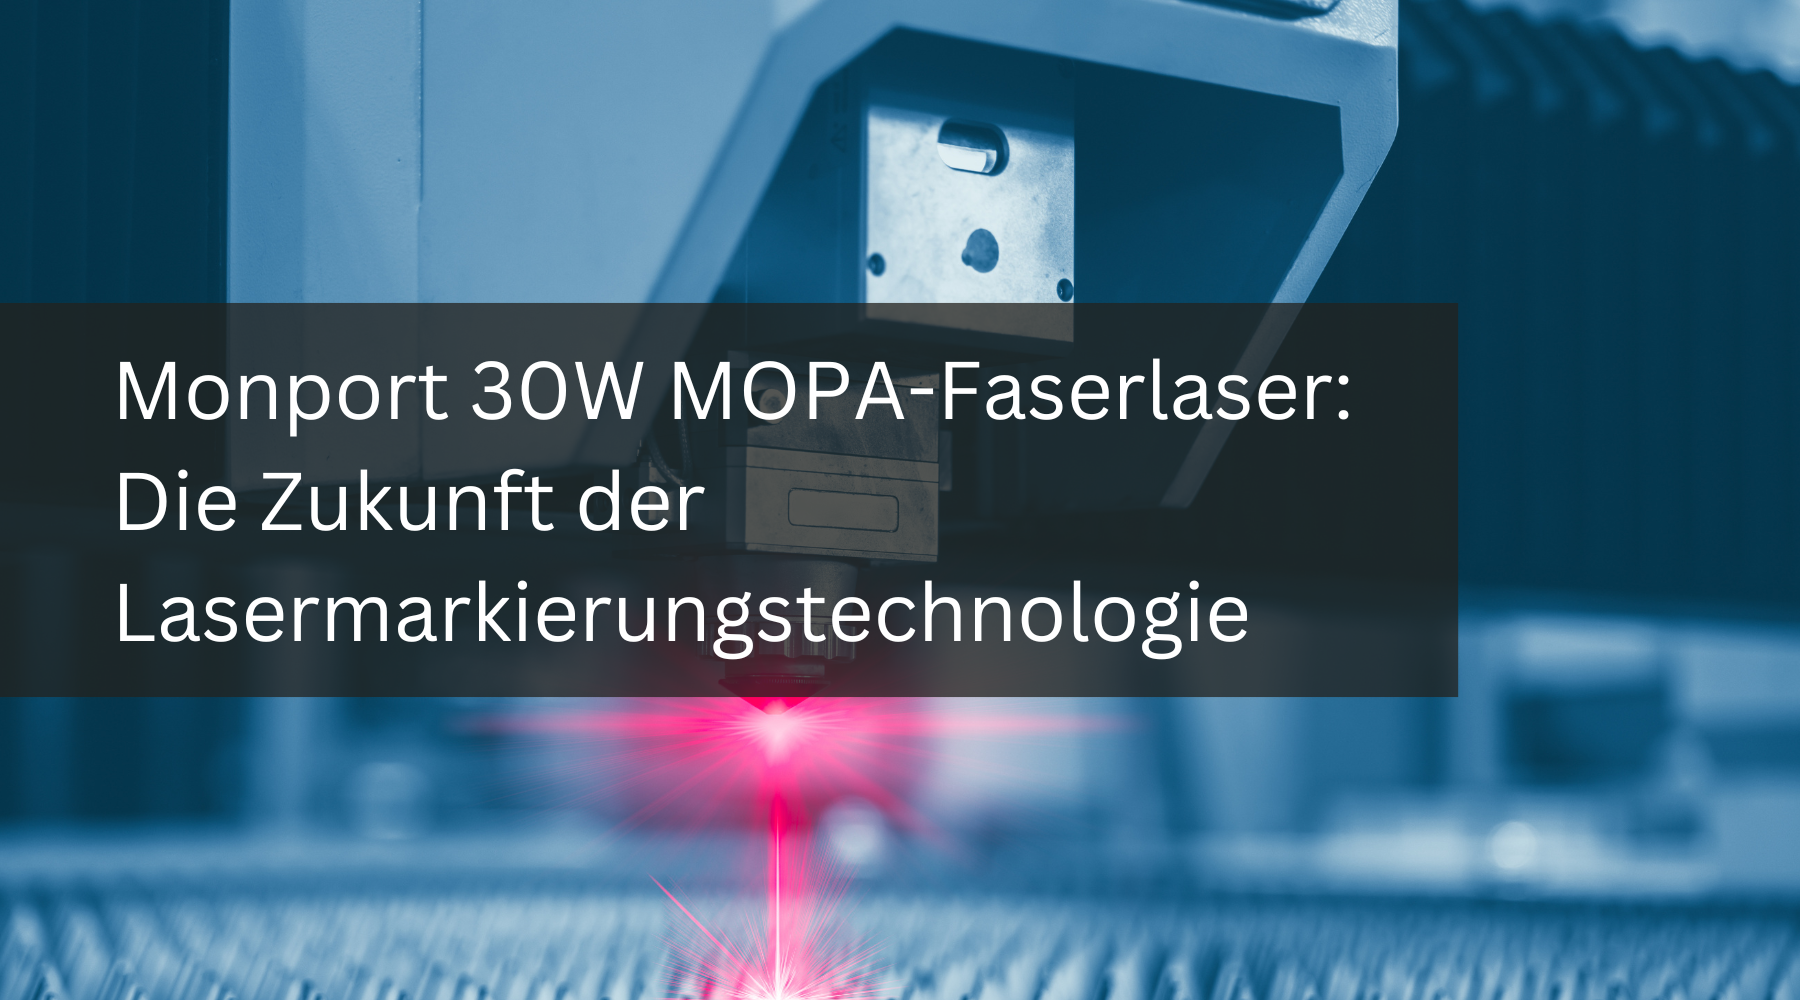 Monport 30W MOPA-Faserlaser: Die Zukunft der Lasermarkierungstechnologie